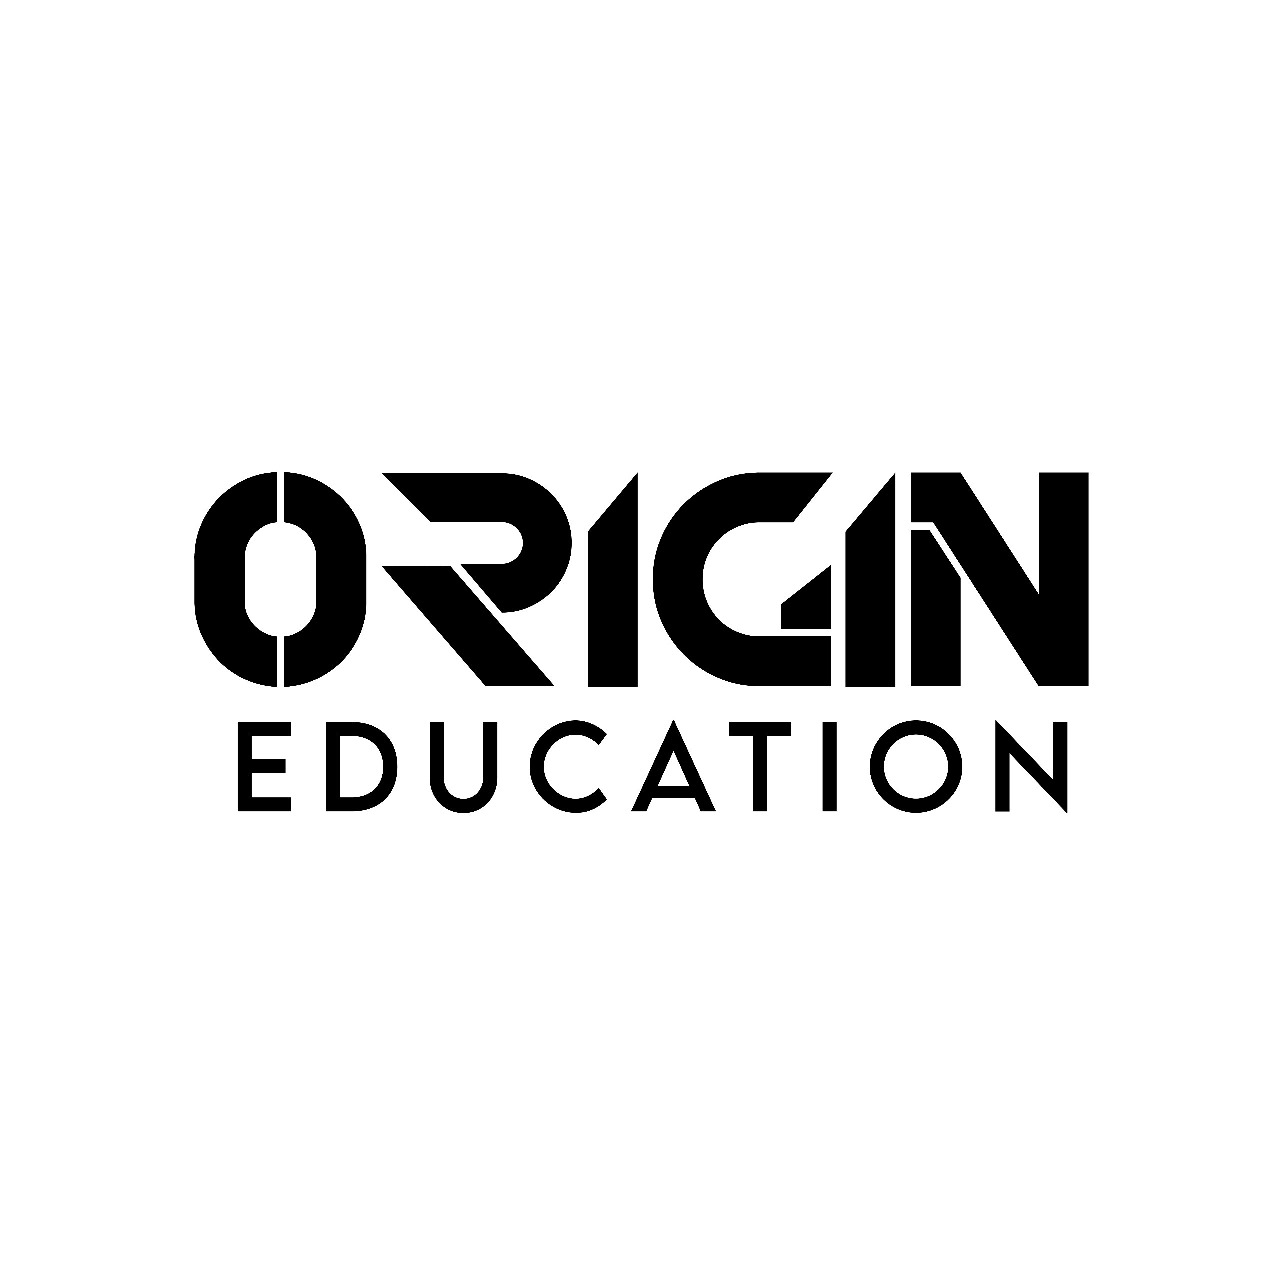 Origin Education